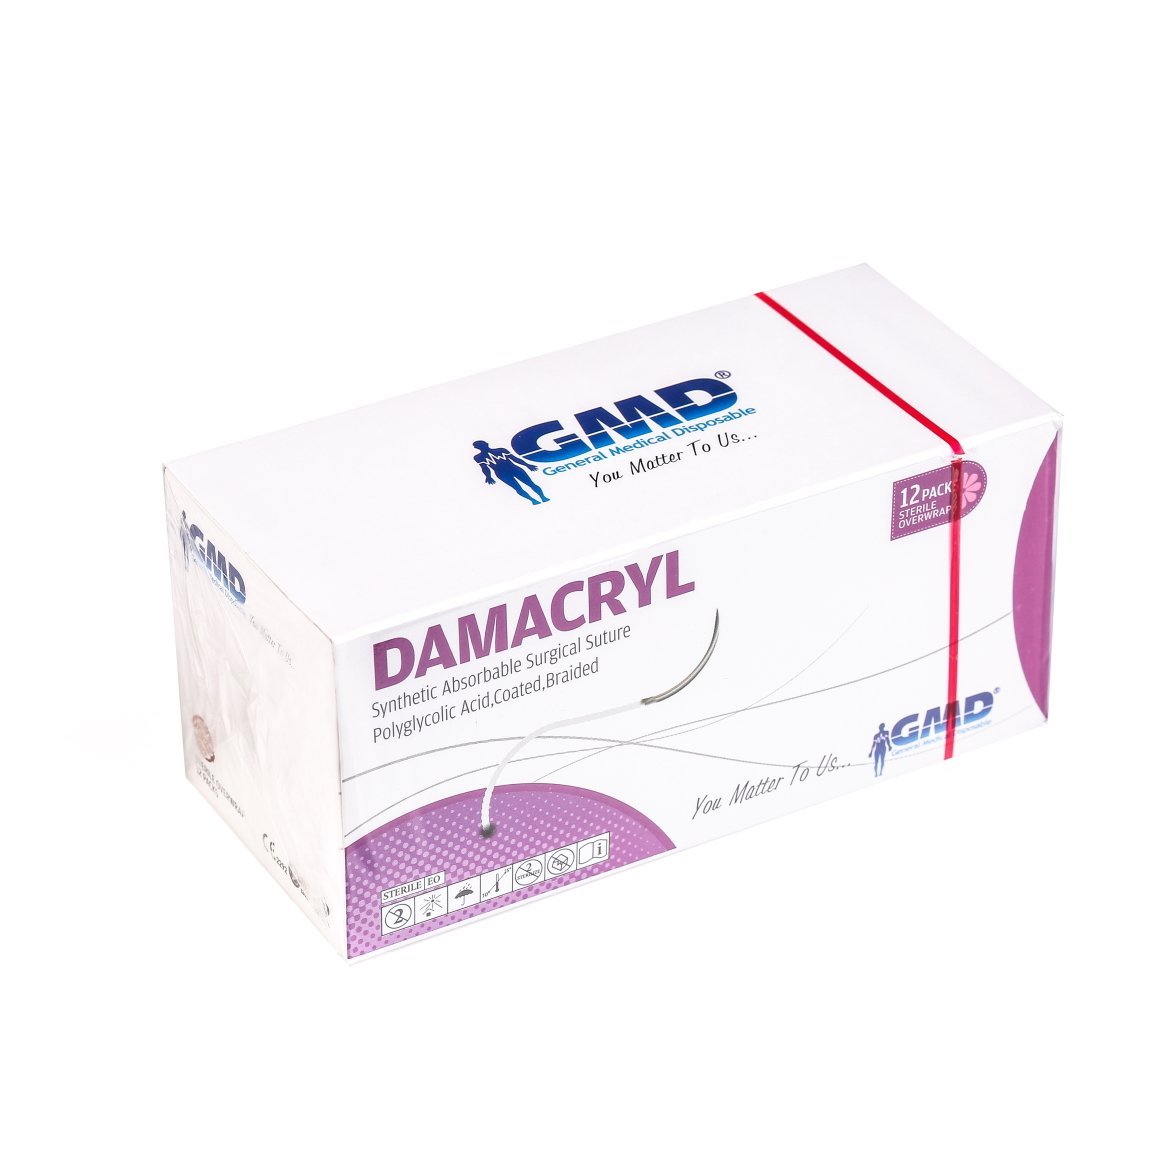 Damacryl Emilebilir Cerrahi Sütür - PGA İplik - USP:3-0-75cm - 1/2 Daire 26 mm - Yuvarlak İğne